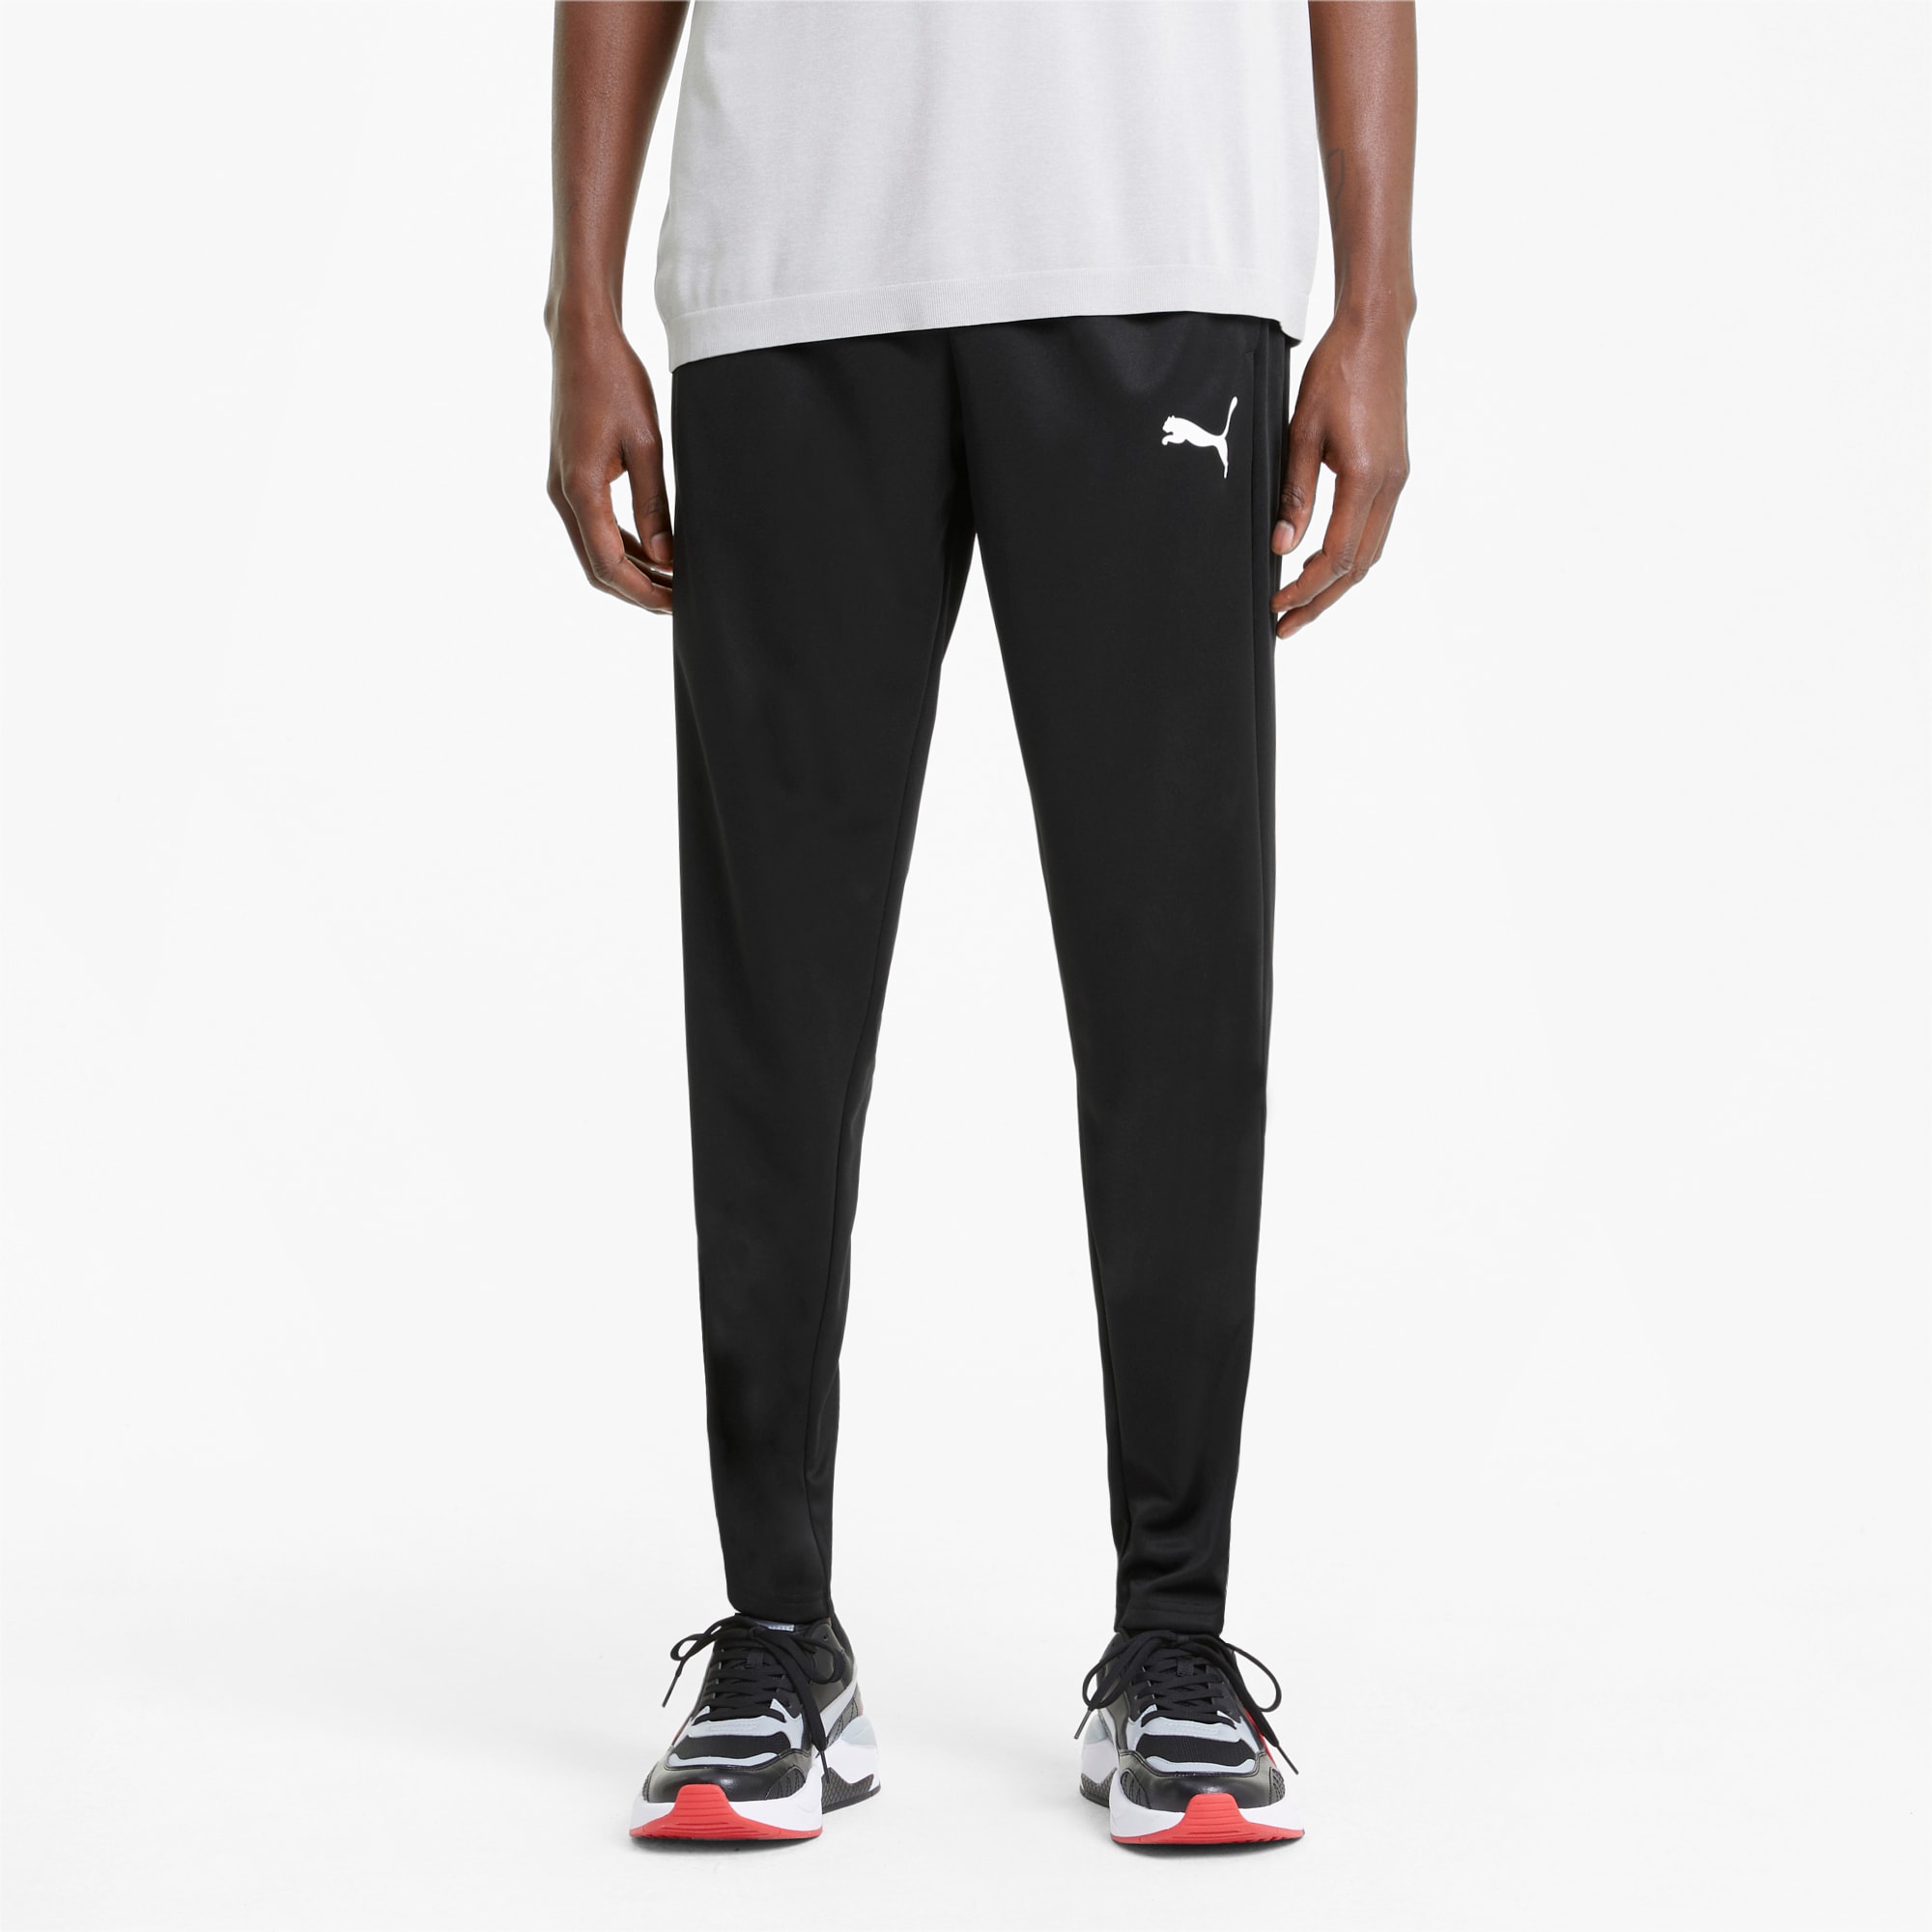 PUMA Active Tricot Men's Sweatpants, Black, Size 4XL, Clothing